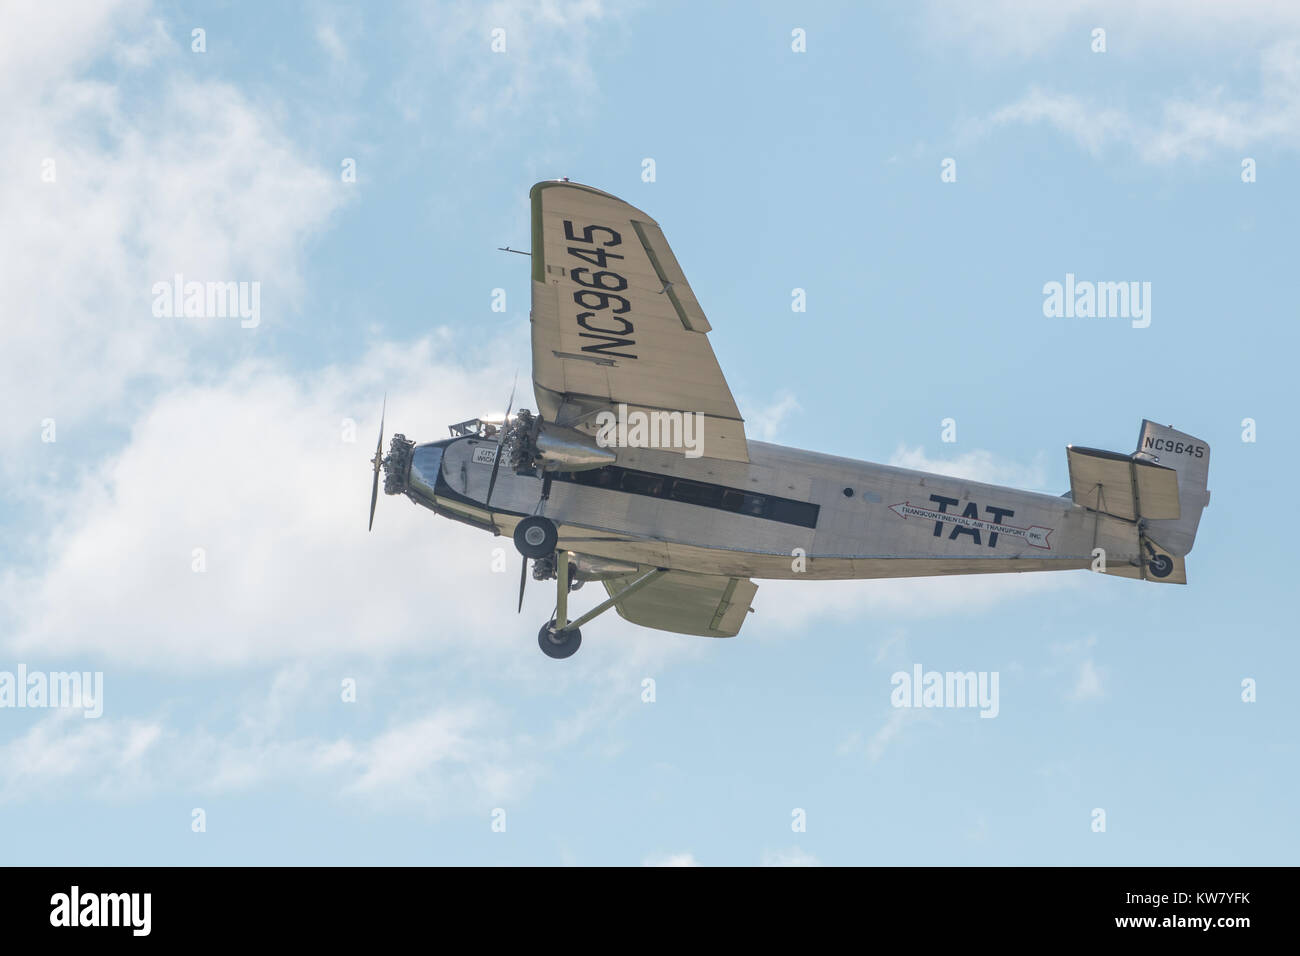 Oshkosh, WI - 24 juillet 2017 : un transport aérien transcontinental Vintage modèle Ford 5-AT-B fv aircraft Banque D'Images